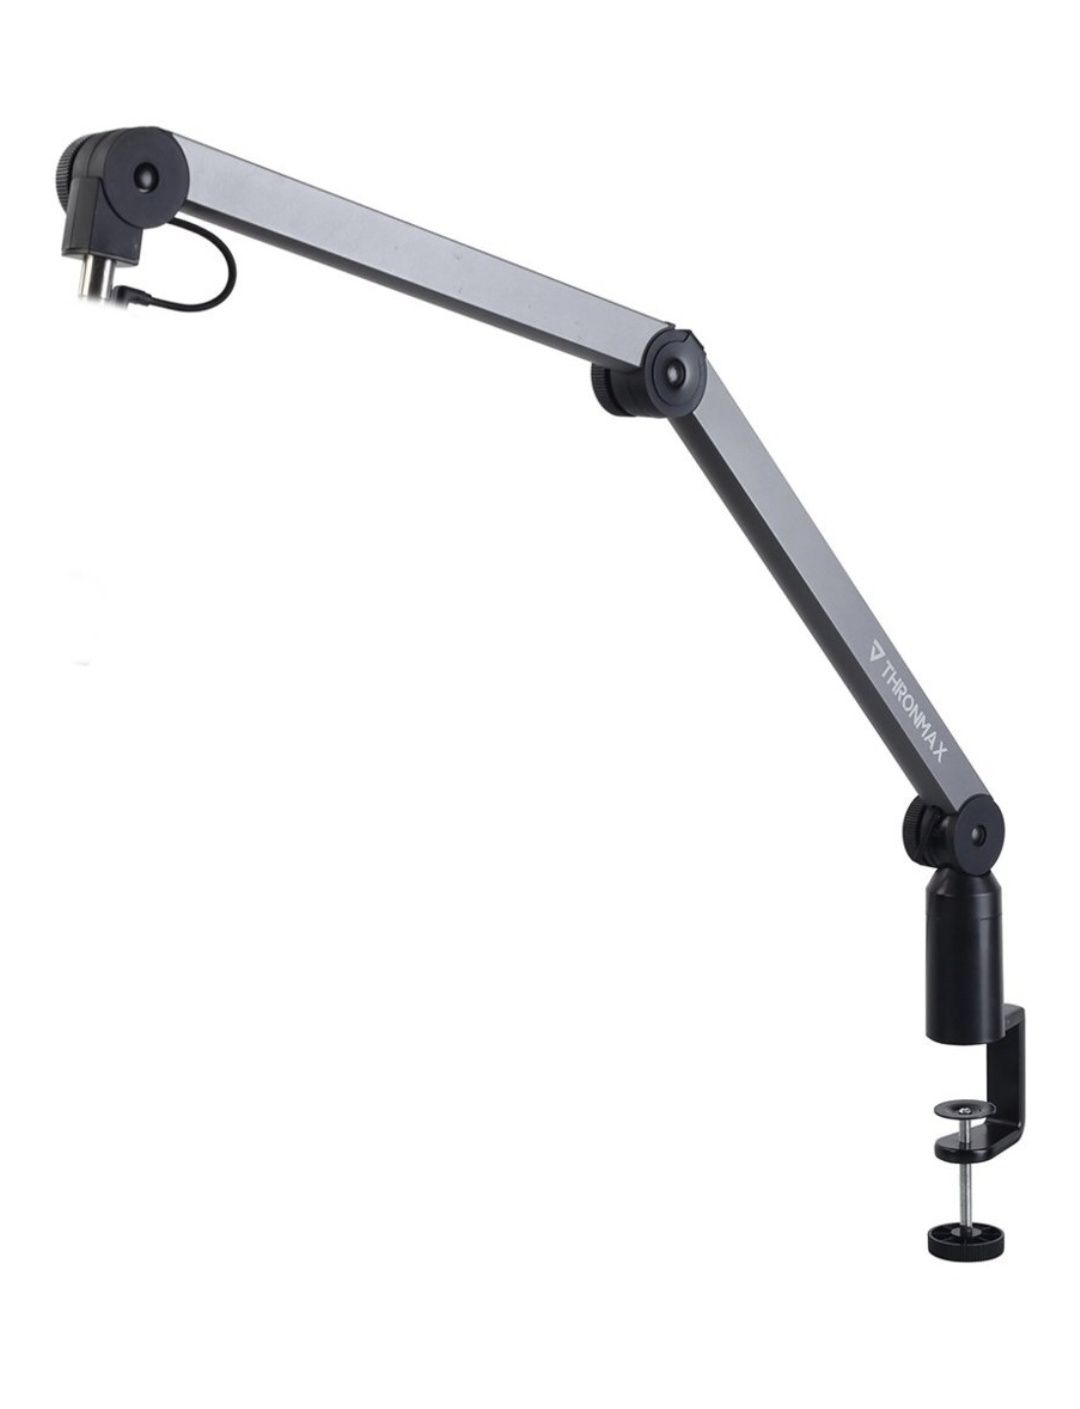 микрофон HyperX Quadcast S + пантограф Thronmax Caster Desk Arm S2